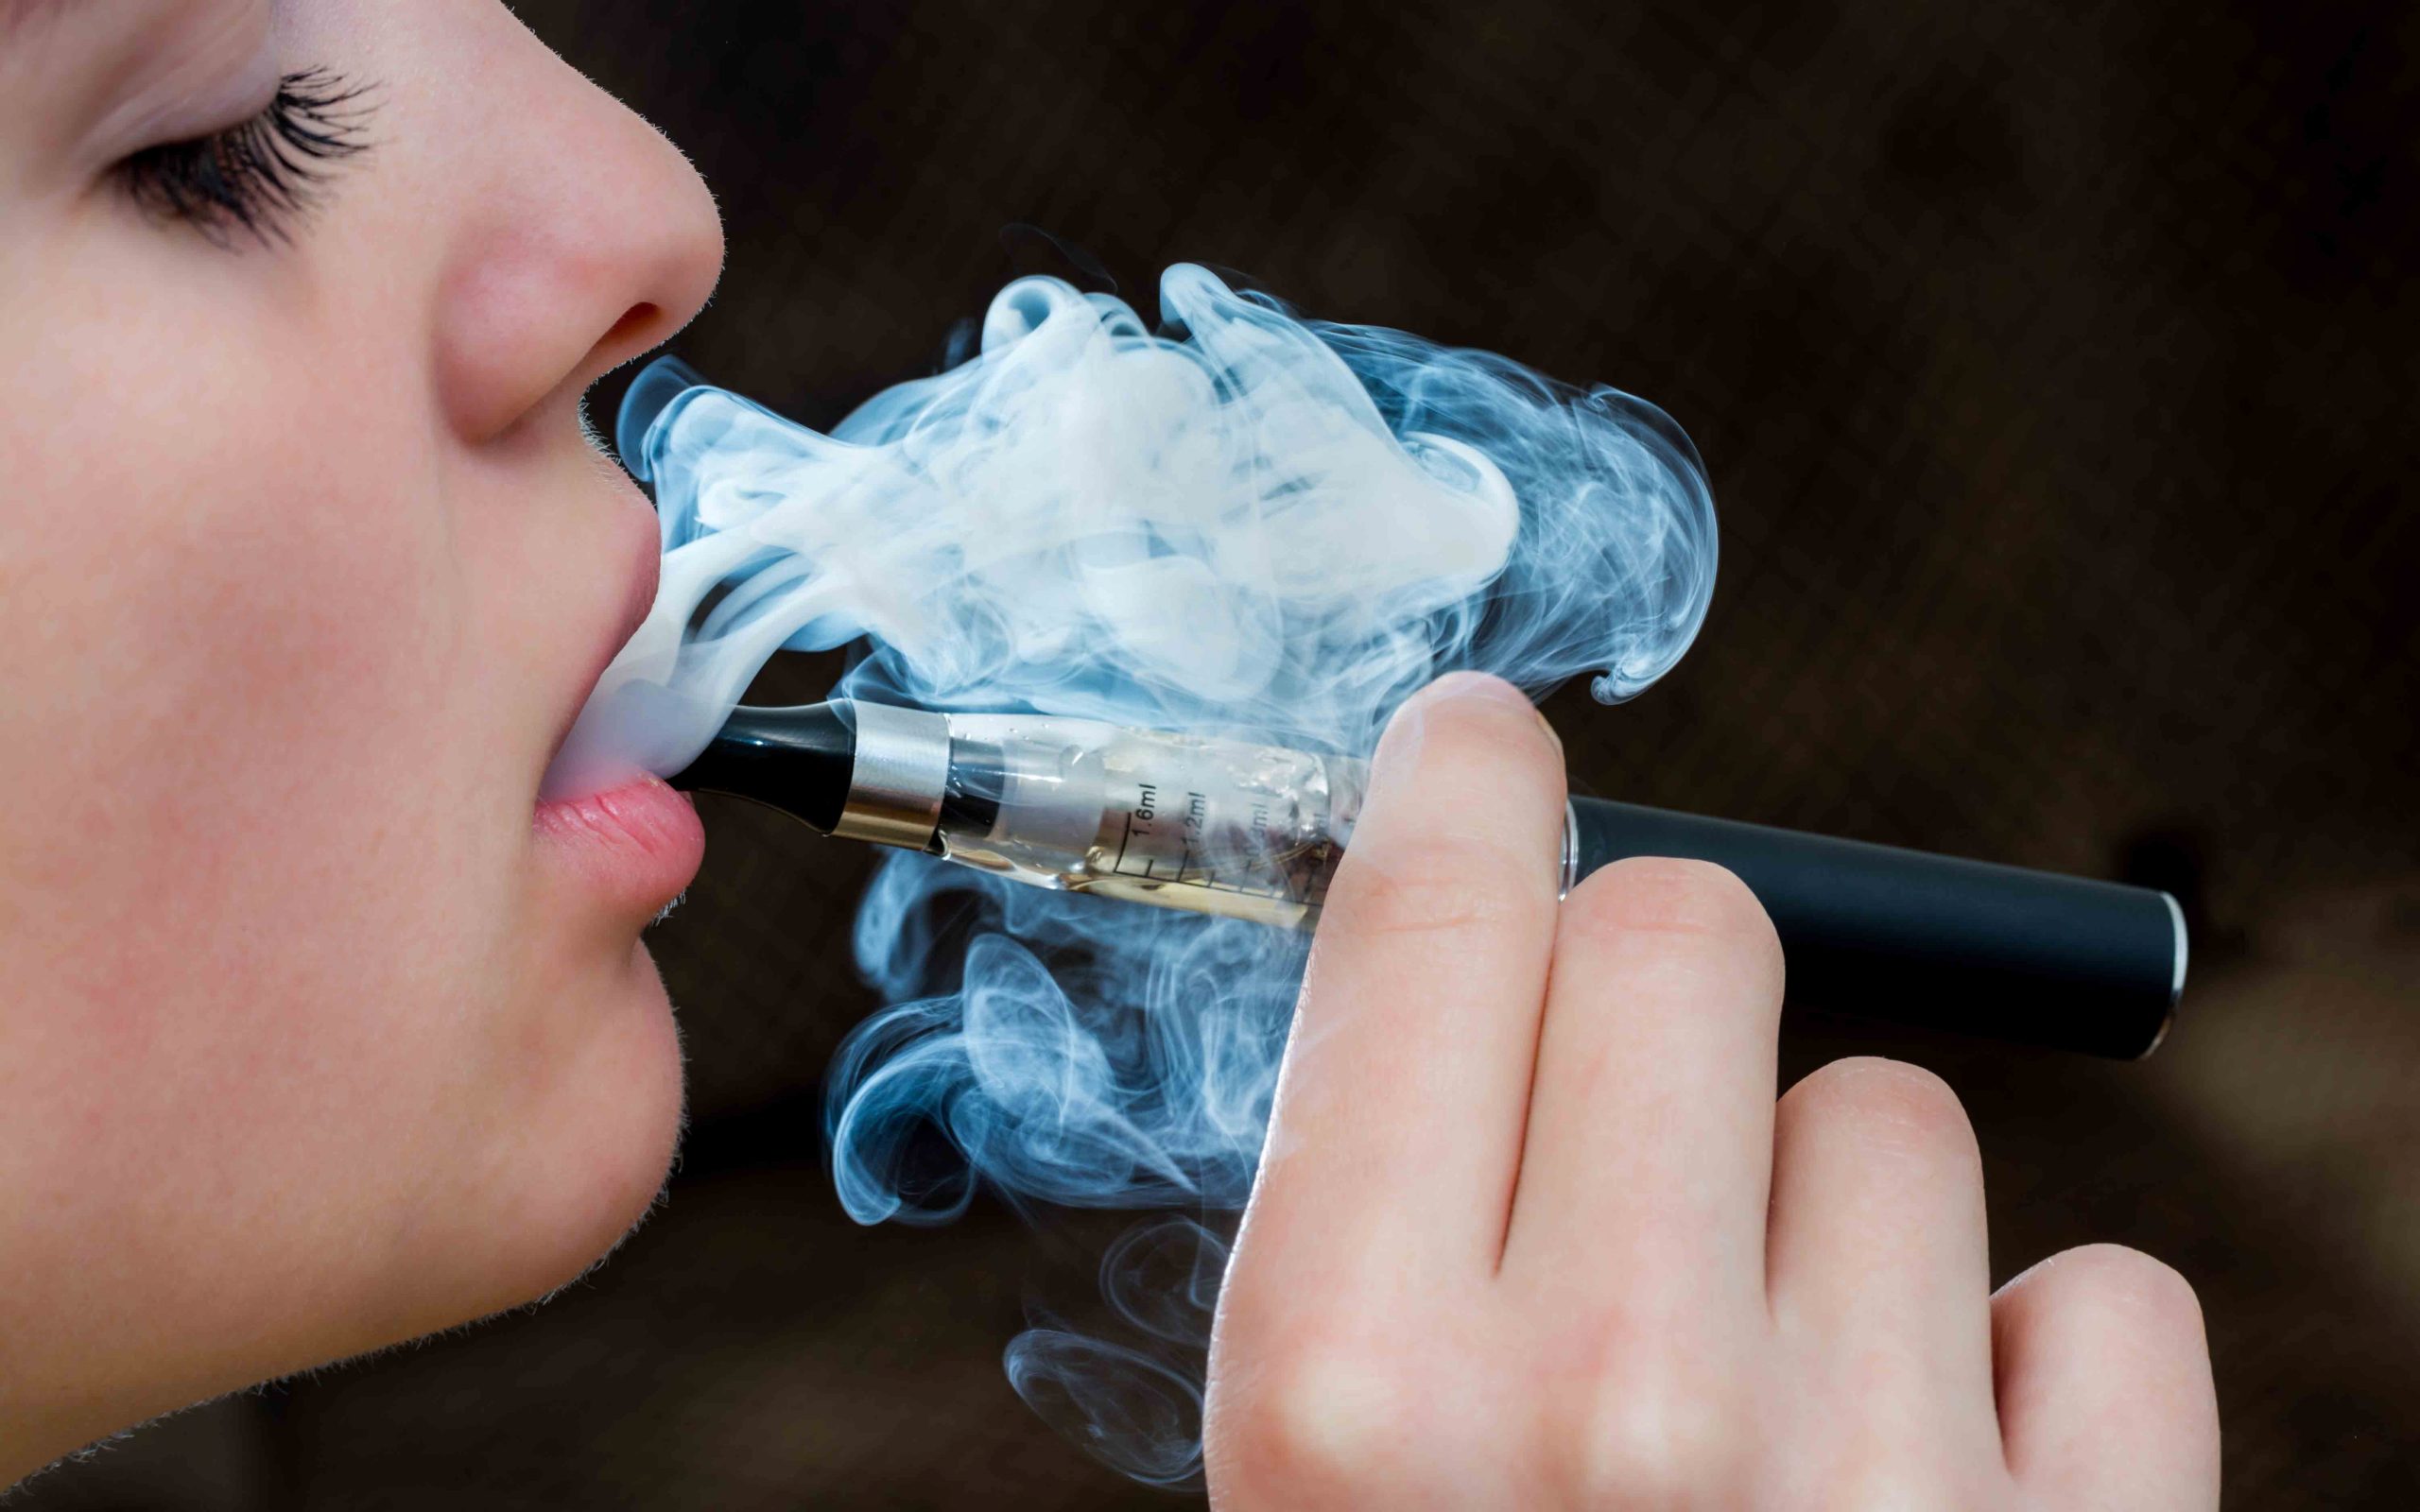 Νέα έρευνα αποκαλύπτει: Το άτμισμα αυξάνει τον κίνδυνο καρκίνου όπως το κάπνισμα